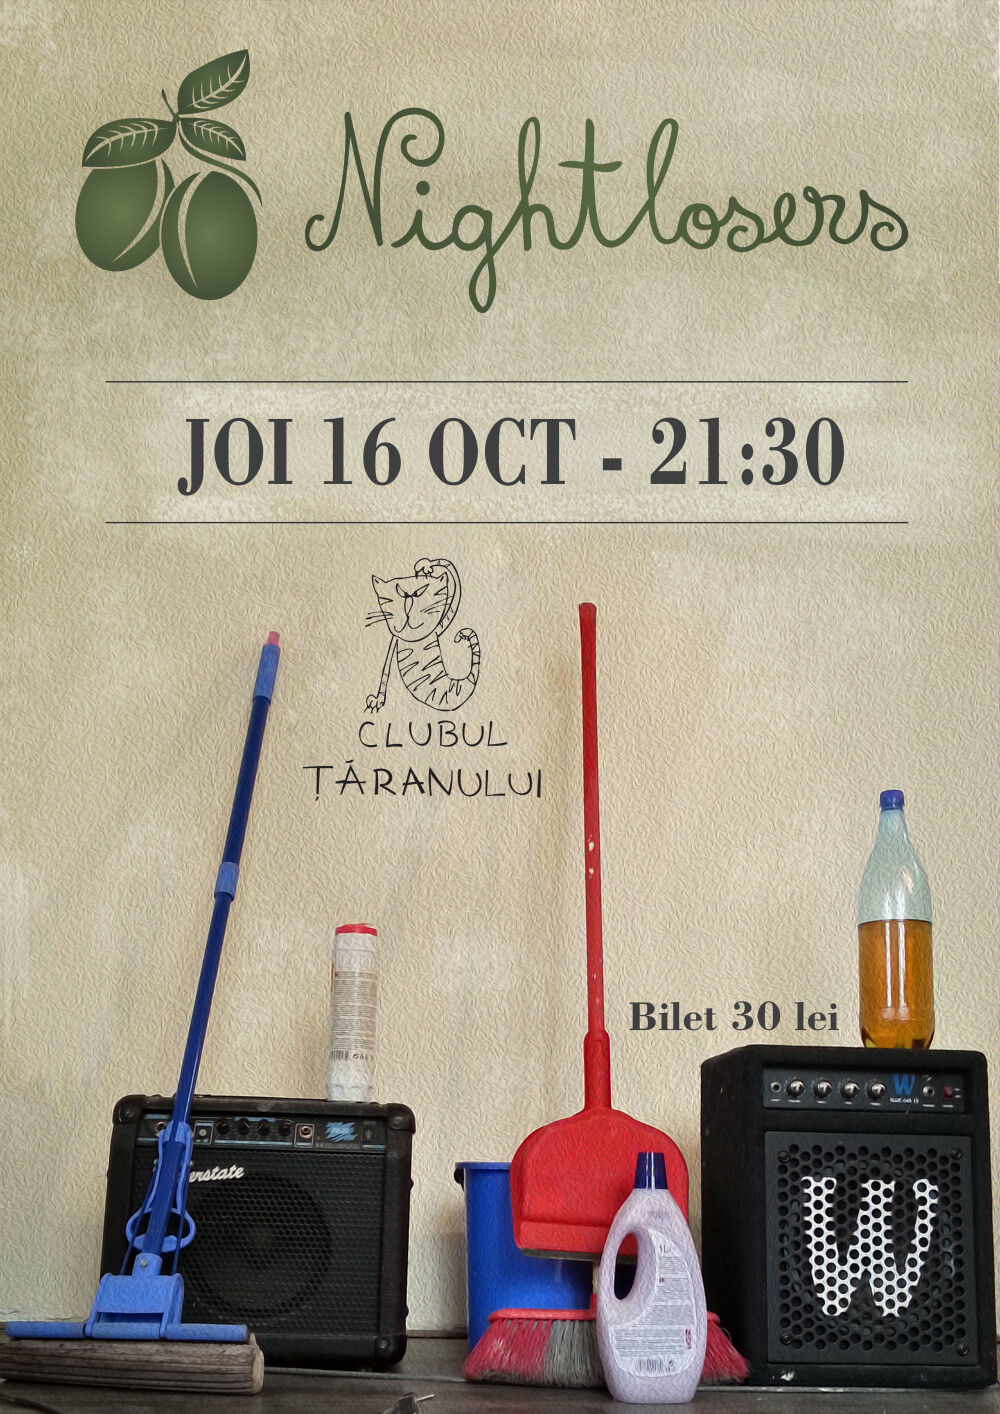 Trupa de blues ardelenesc NIGHTLOSERS concerteaza joi, 16 octombrie, in Bucuresti - Imaginea 2